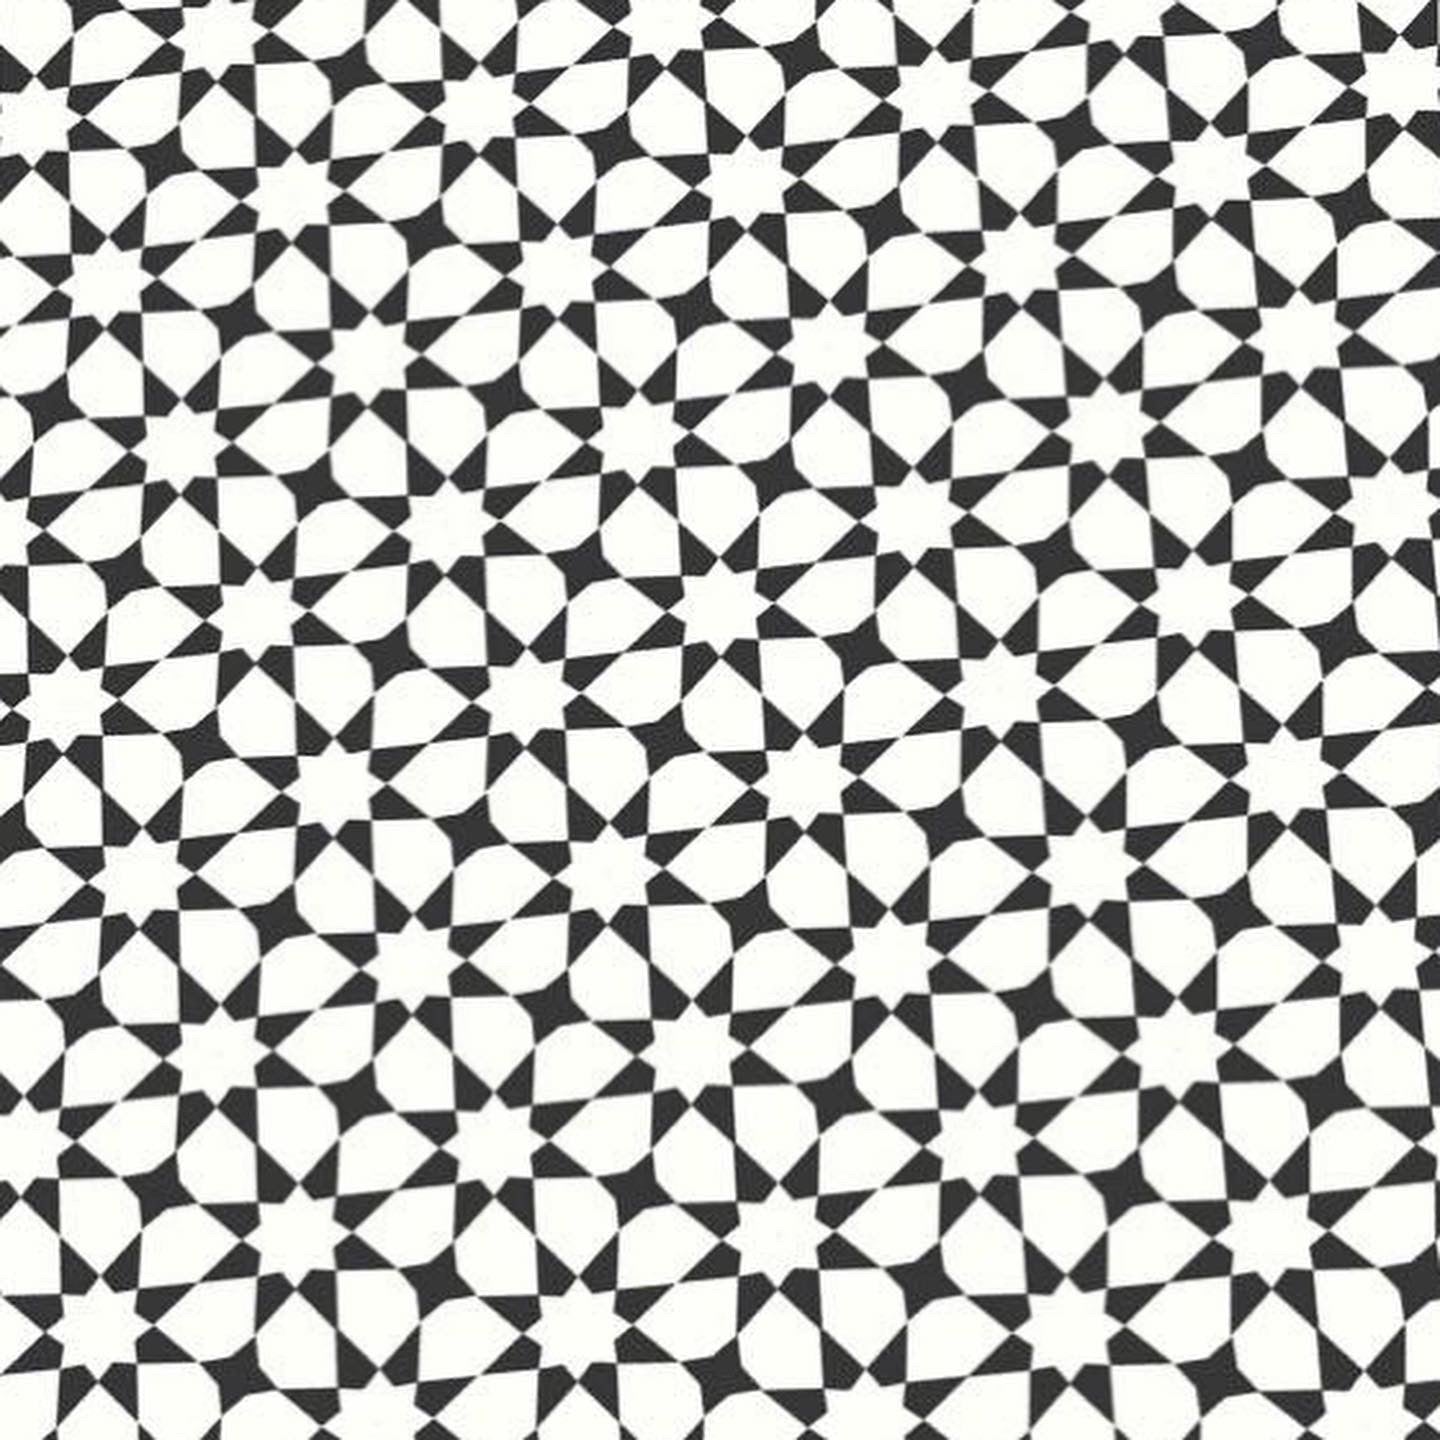 Black and White Tile